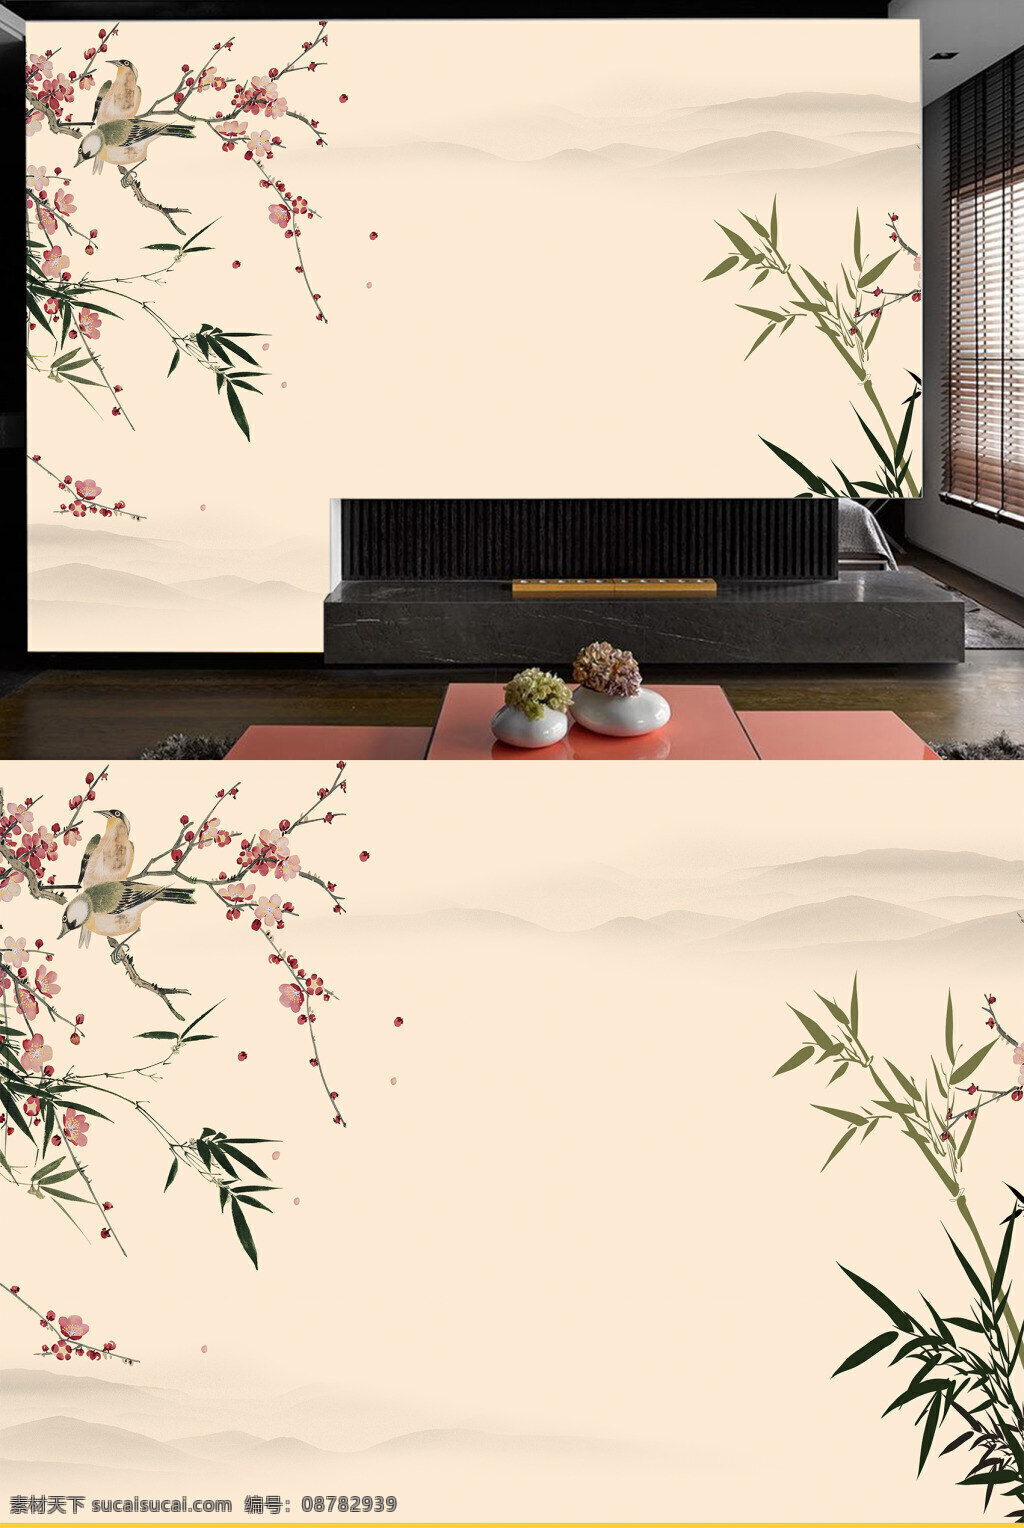 中国 传统 大气 桃花 翠竹 客厅 背景 墙 背景墙 简约 宁静 装饰画